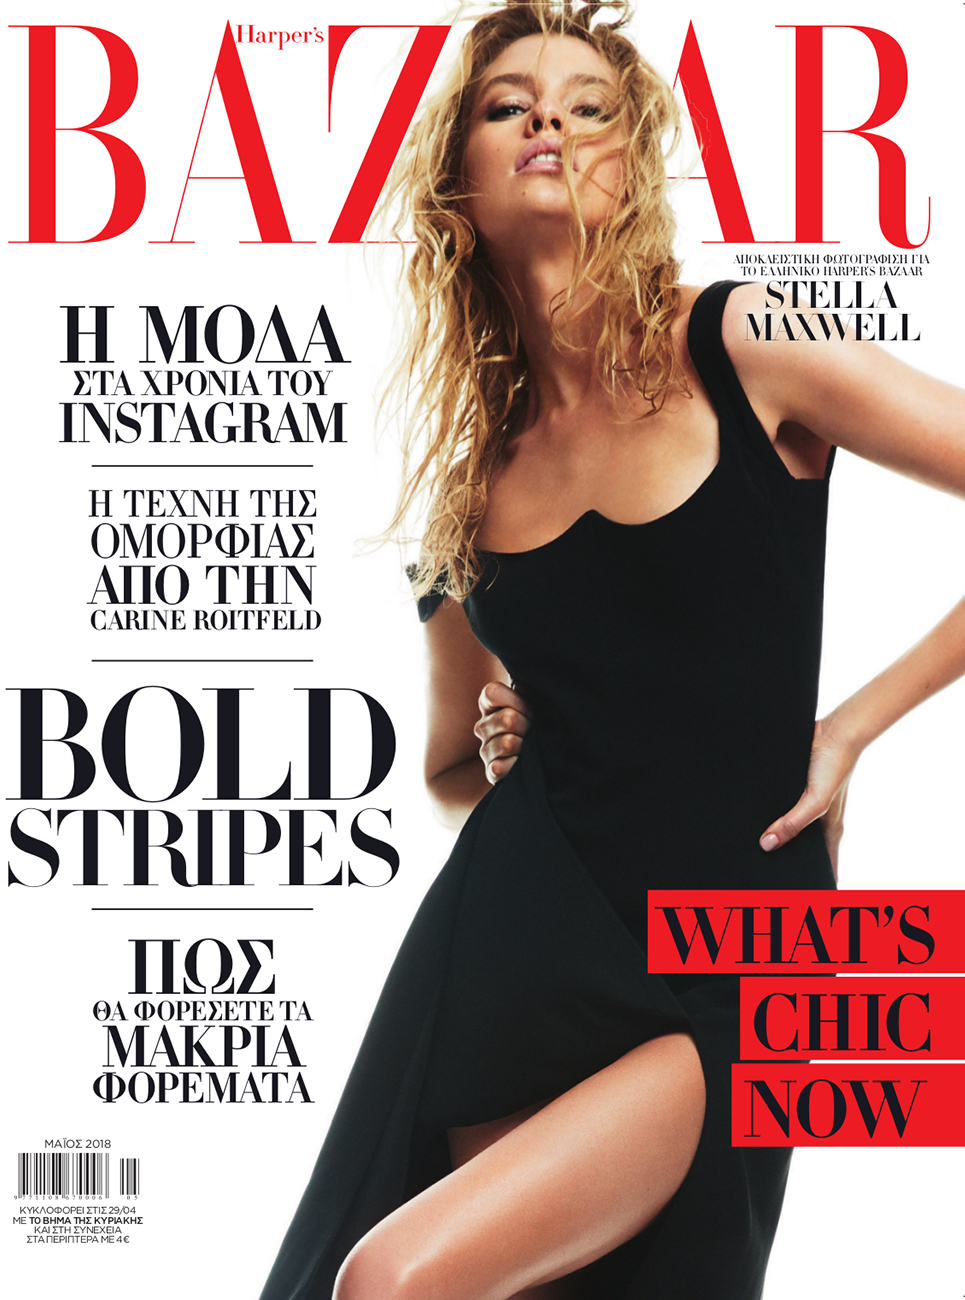 Harper's Bazaar For Magnolia Grace May 2018